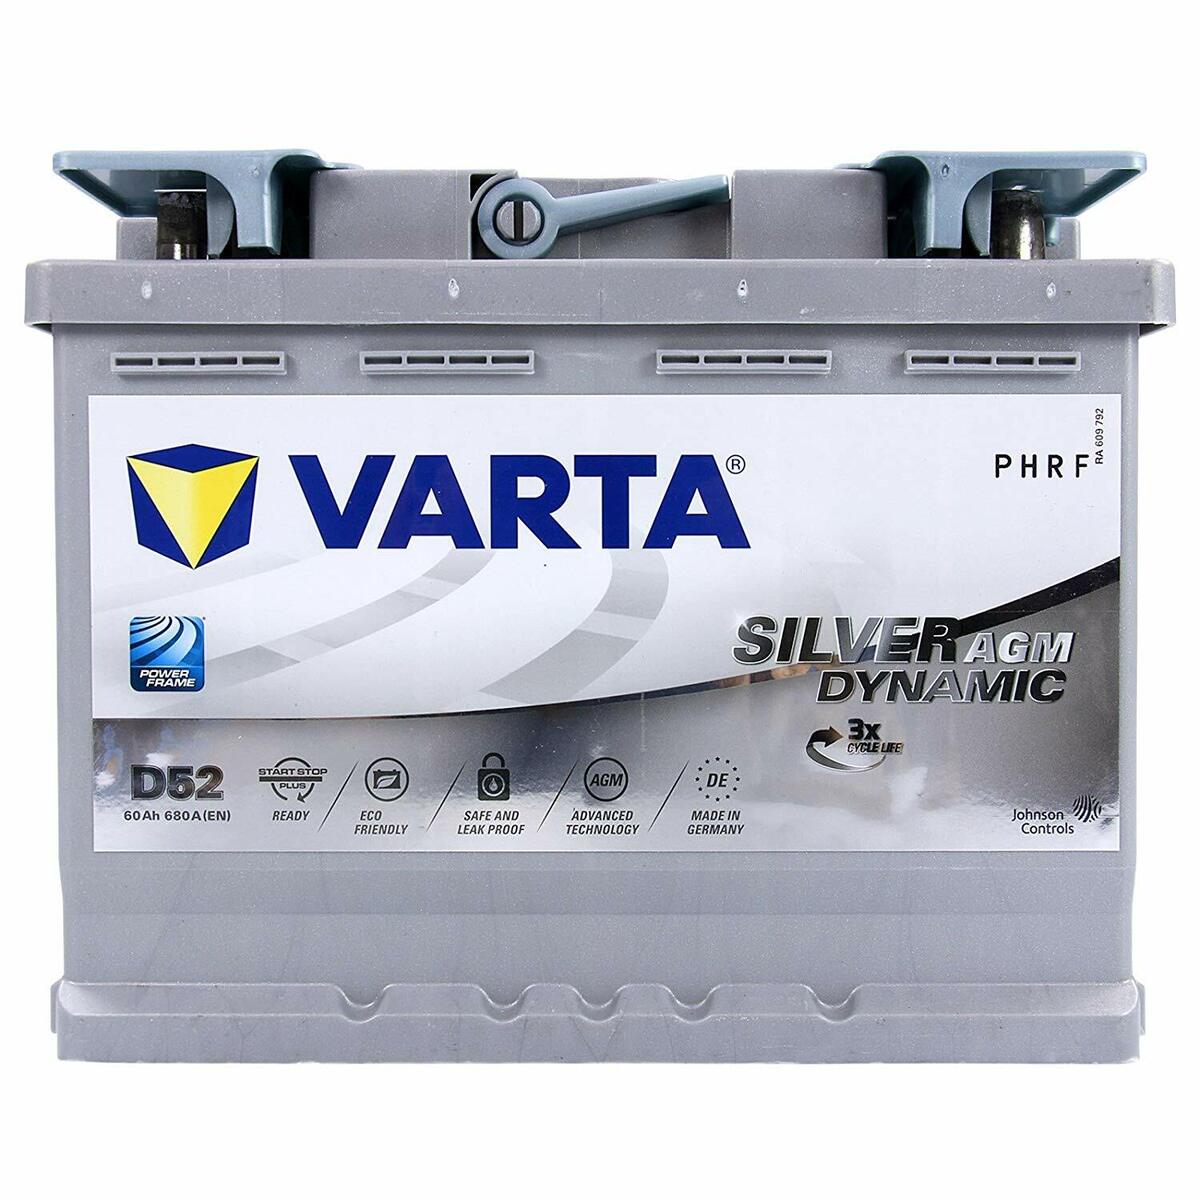 Autobatterie Batterie varta VARTA Varta 12v 74ah 680A wie neu